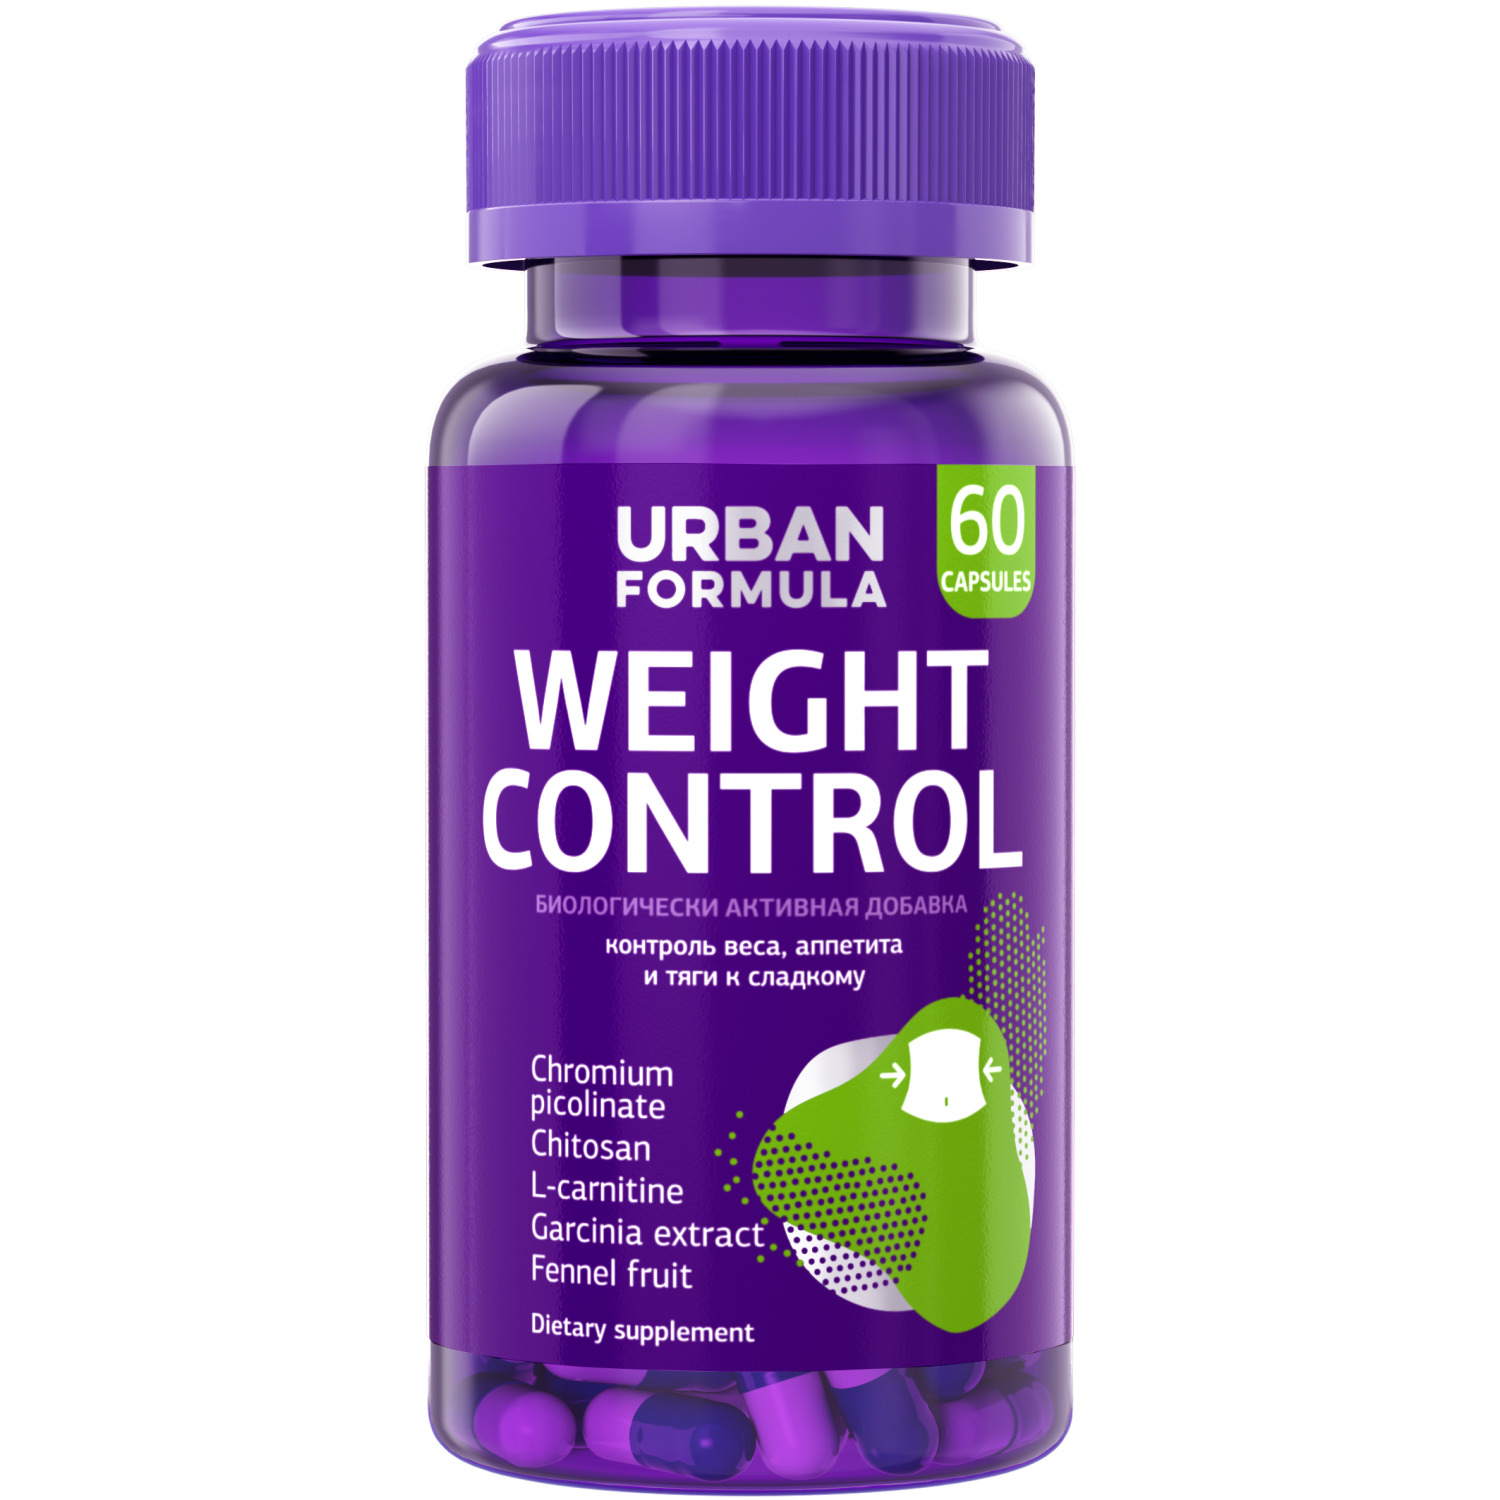 Комплекс для контроля веса и аппетита Urban Formula Weight Control, 60 капсул - купить в интернет-магазинах, цены на Мегамаркет | витамины, минералы и пищевые добавки FS101251014